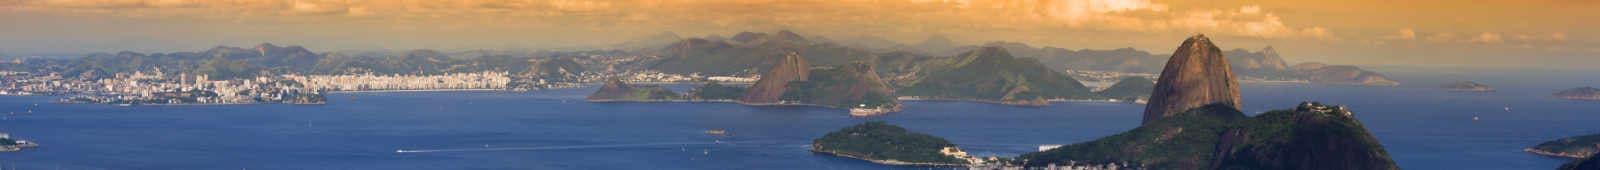 Brazil Mountain View